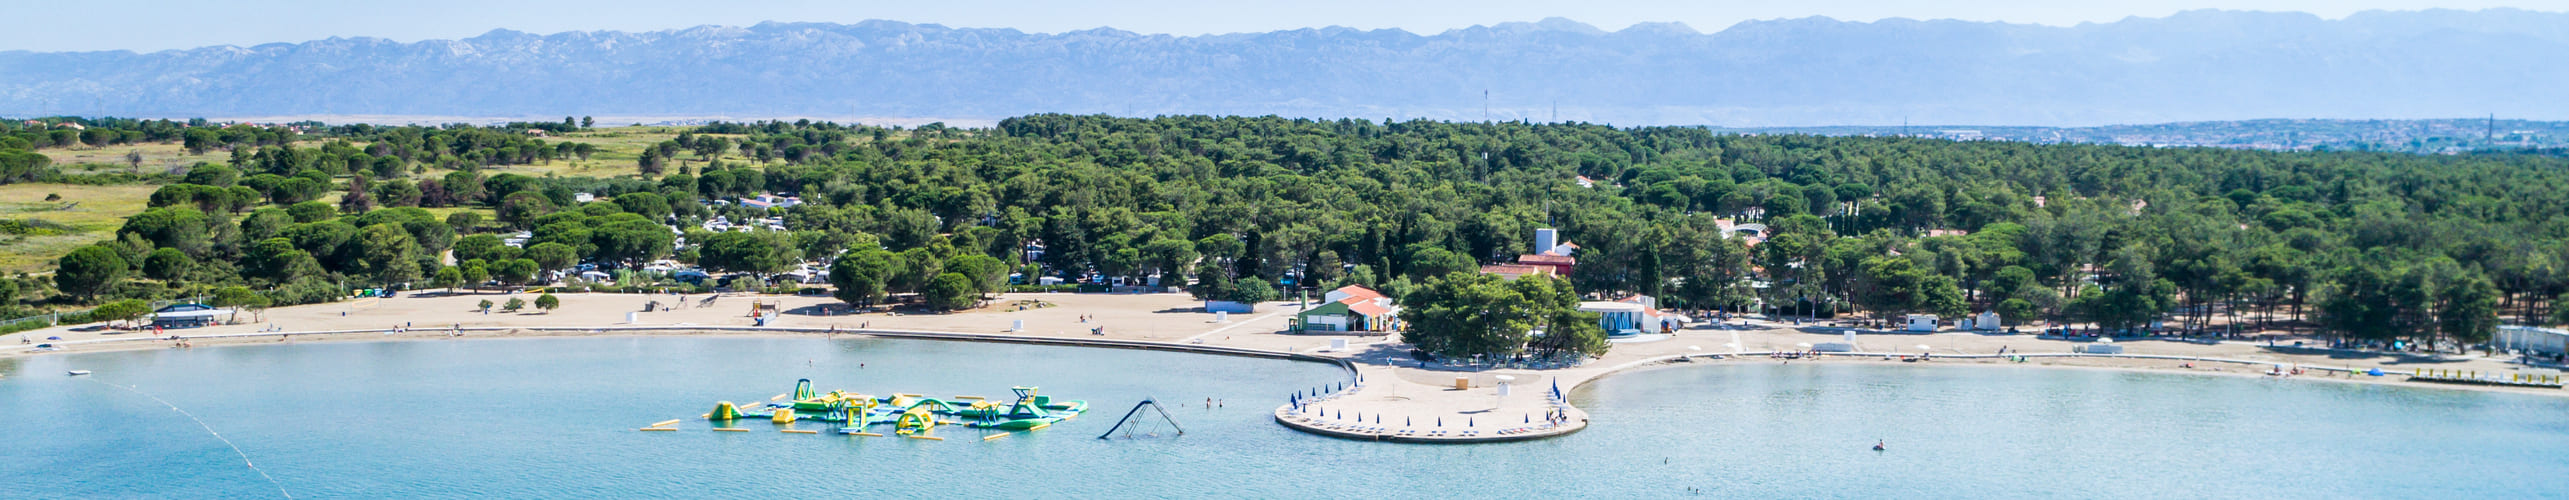 Baie de Zadar